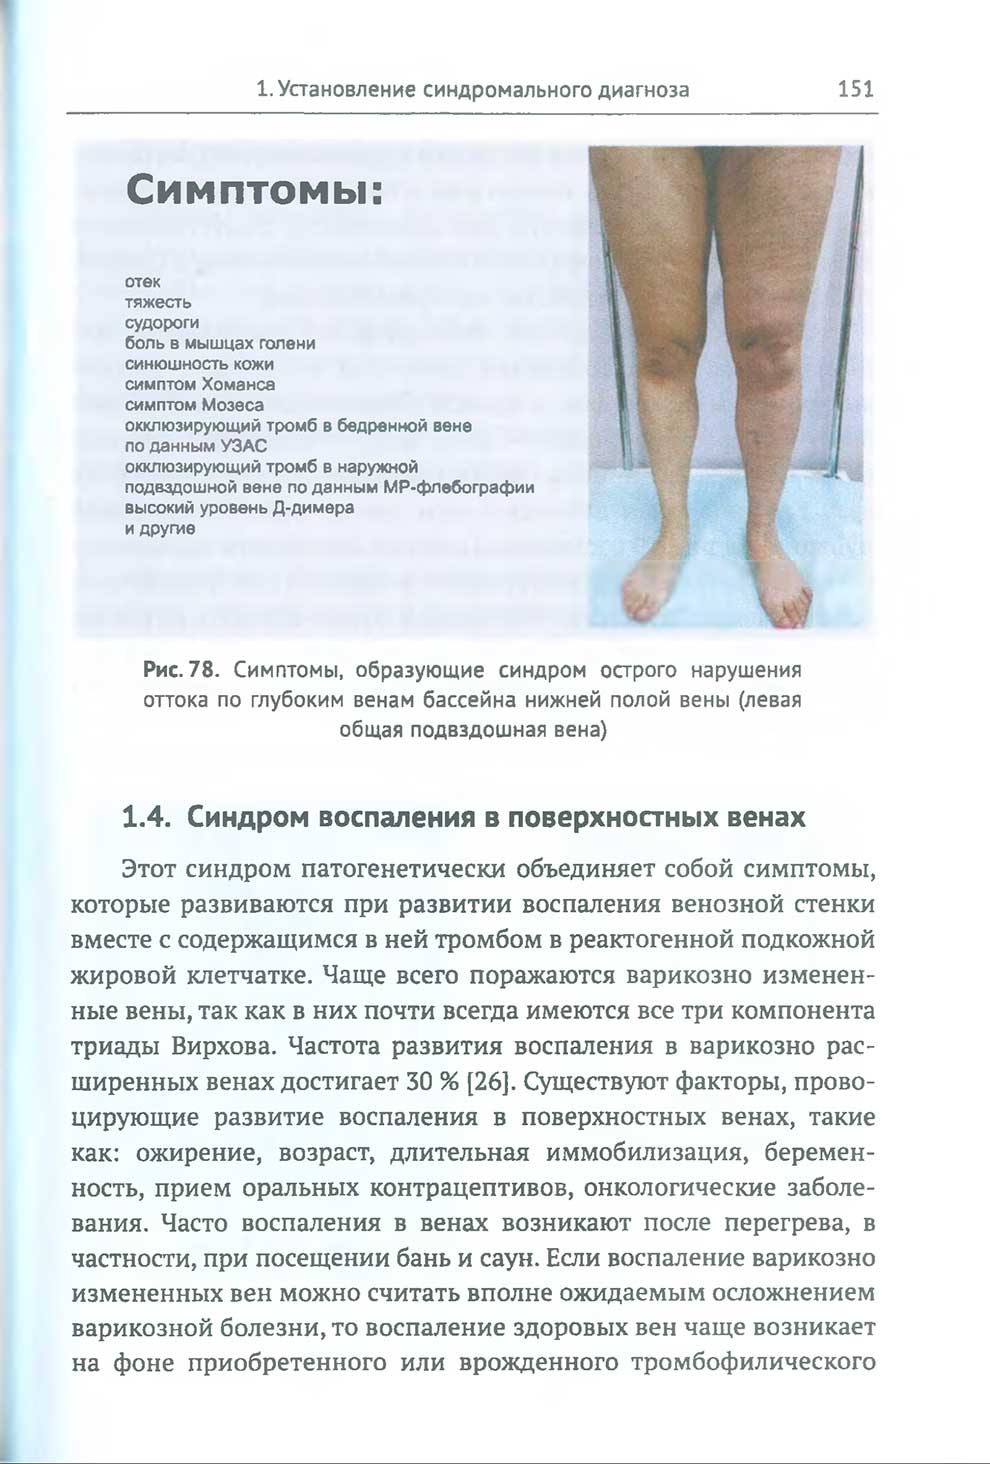 Симптомы, образующие синдром острого нарушения оттока по глубоким венам бассейна нижней полой вены (левая общая подвздошная вена)